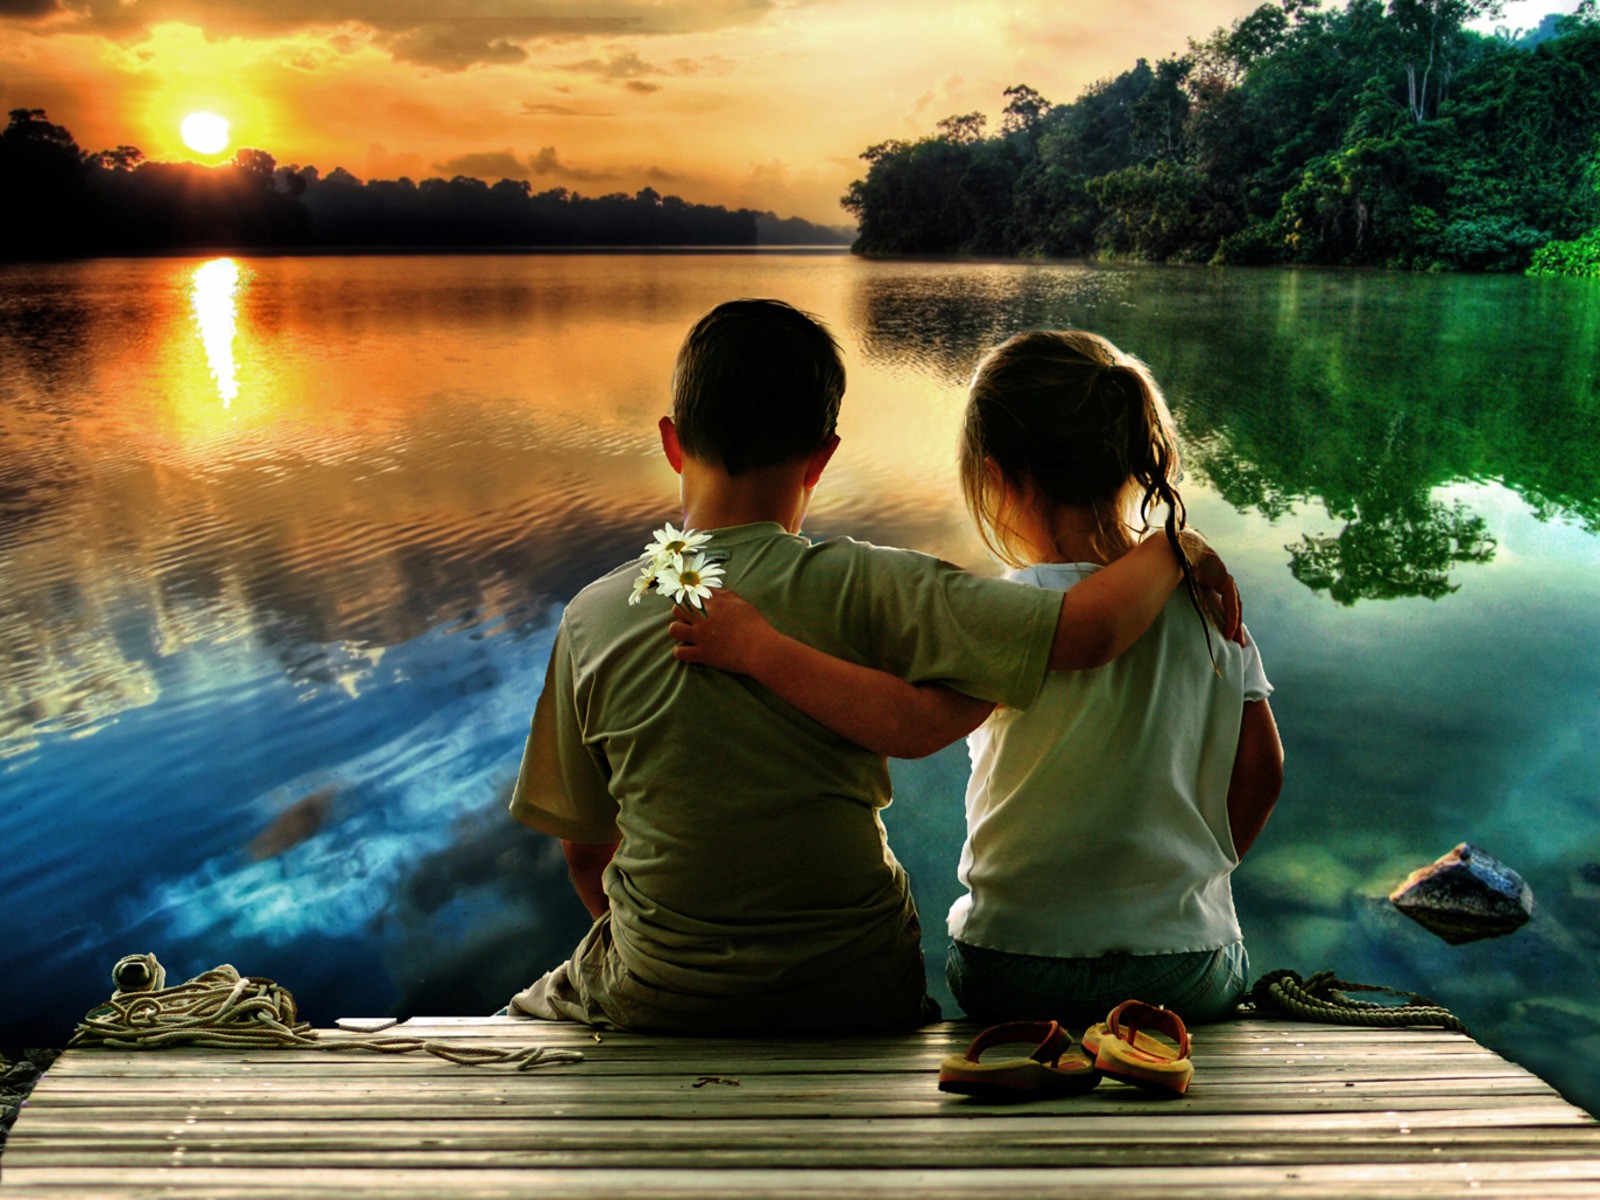 photography, child, daisy, friend, lake, love, reflection, sunset, water